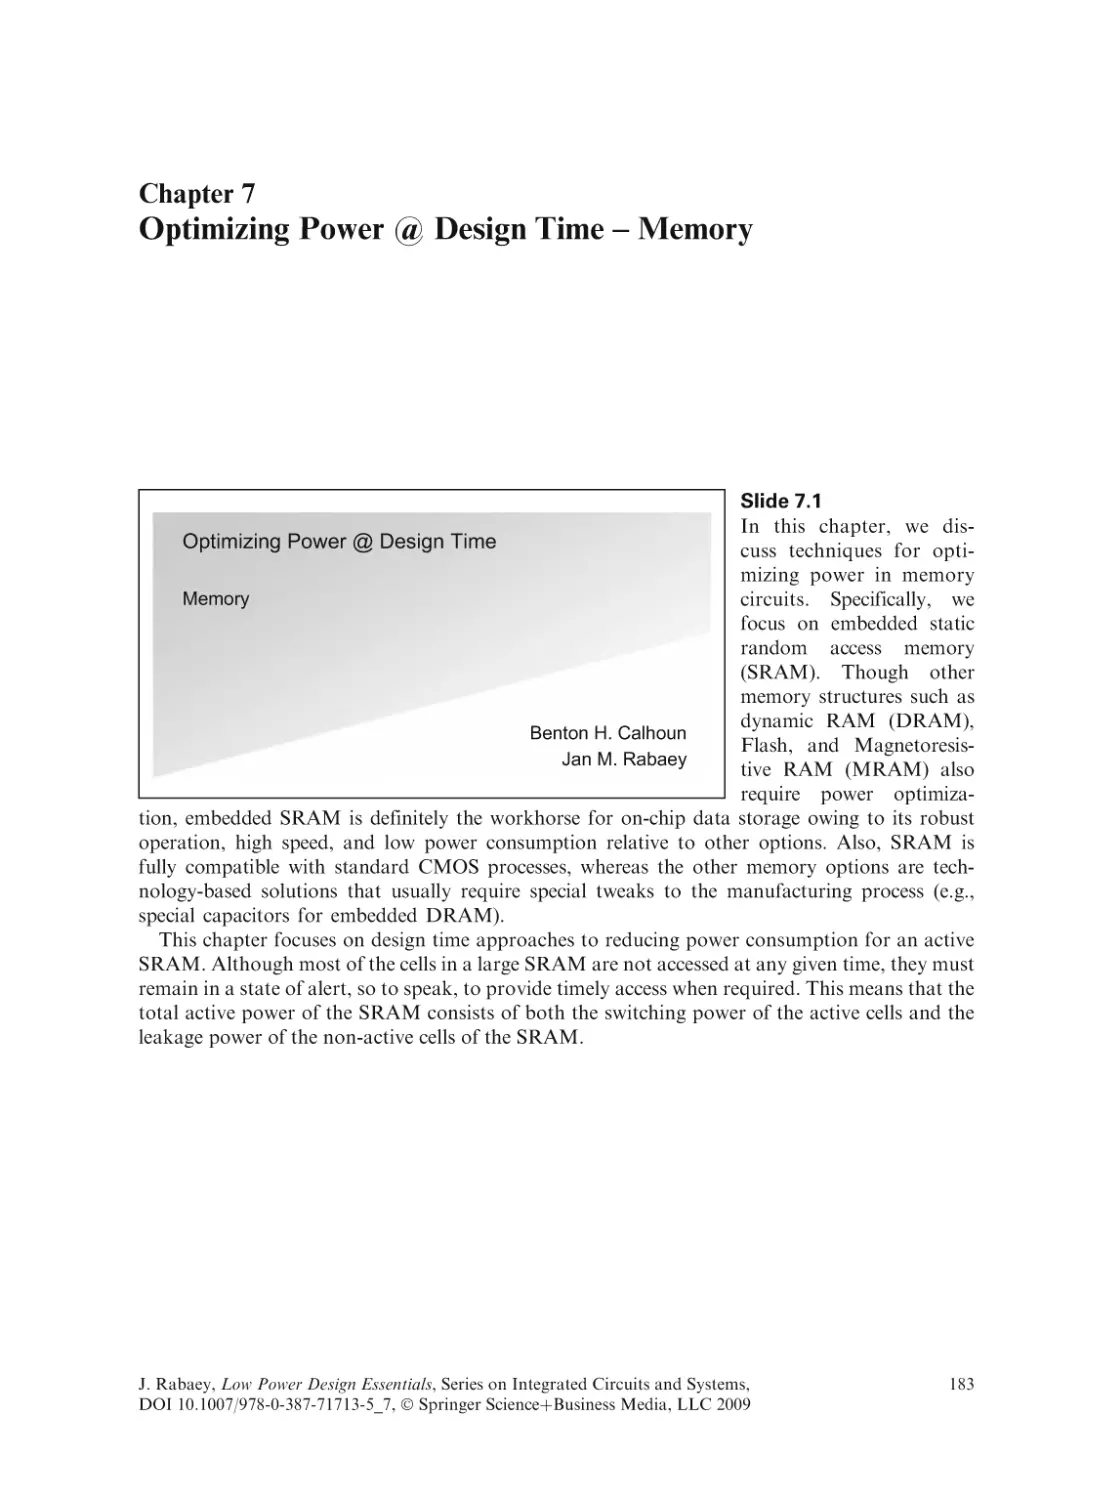 Optimizing Power @ Design Time - Memory
Slide 7.1